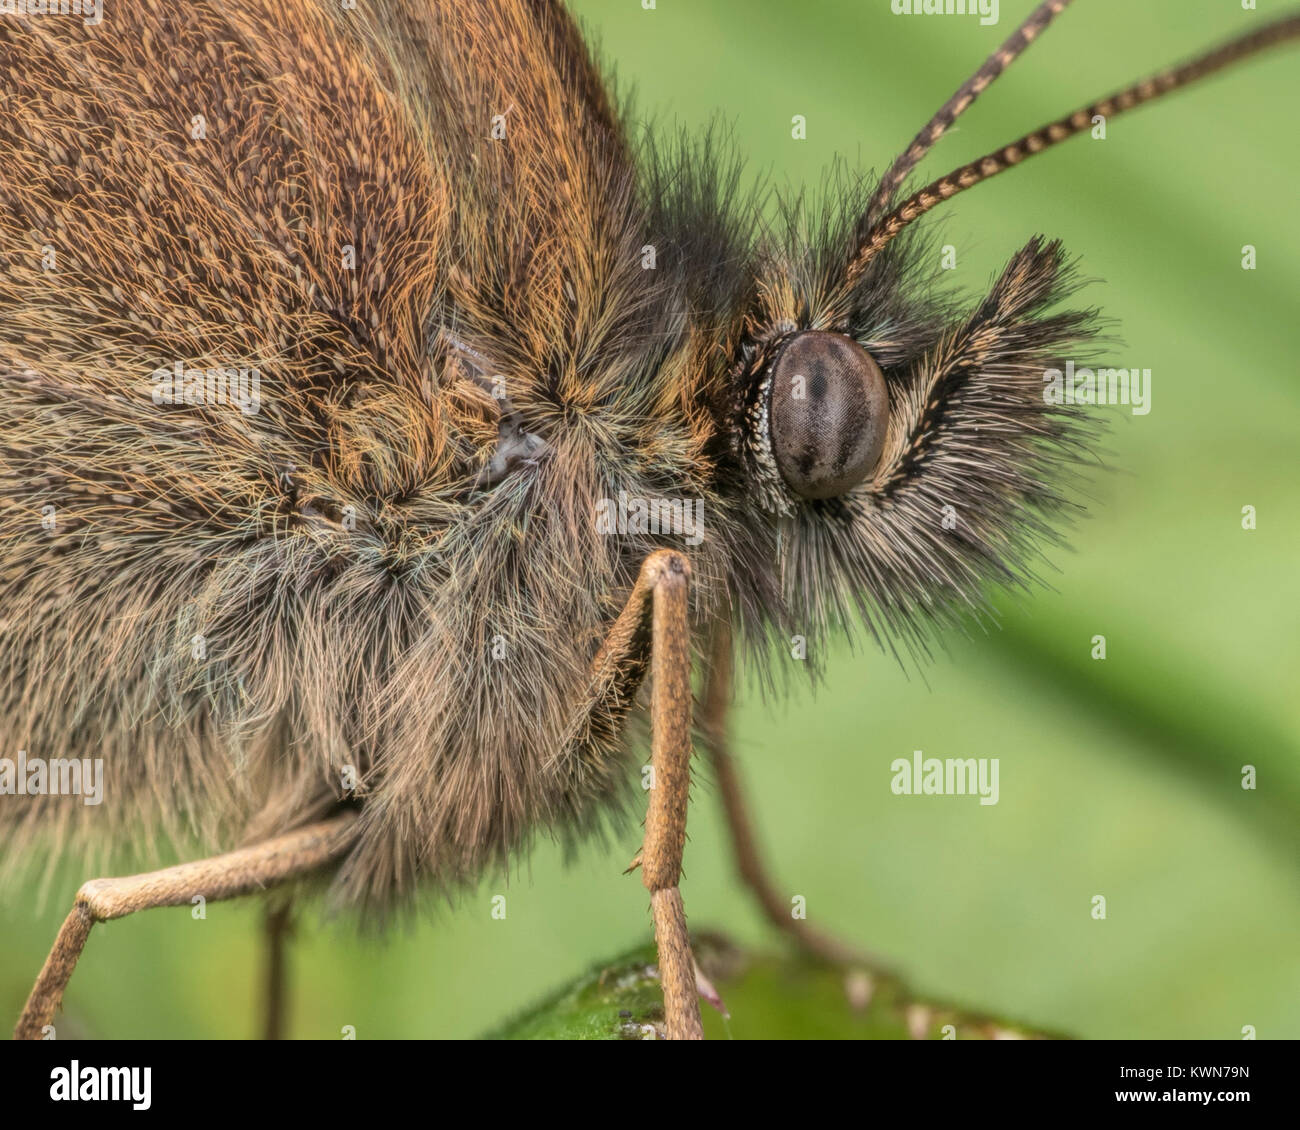 (Un papillon Aphantopus hyperantus) close up detail de la tête. Thurles, Tipperary, Ireland. Banque D'Images